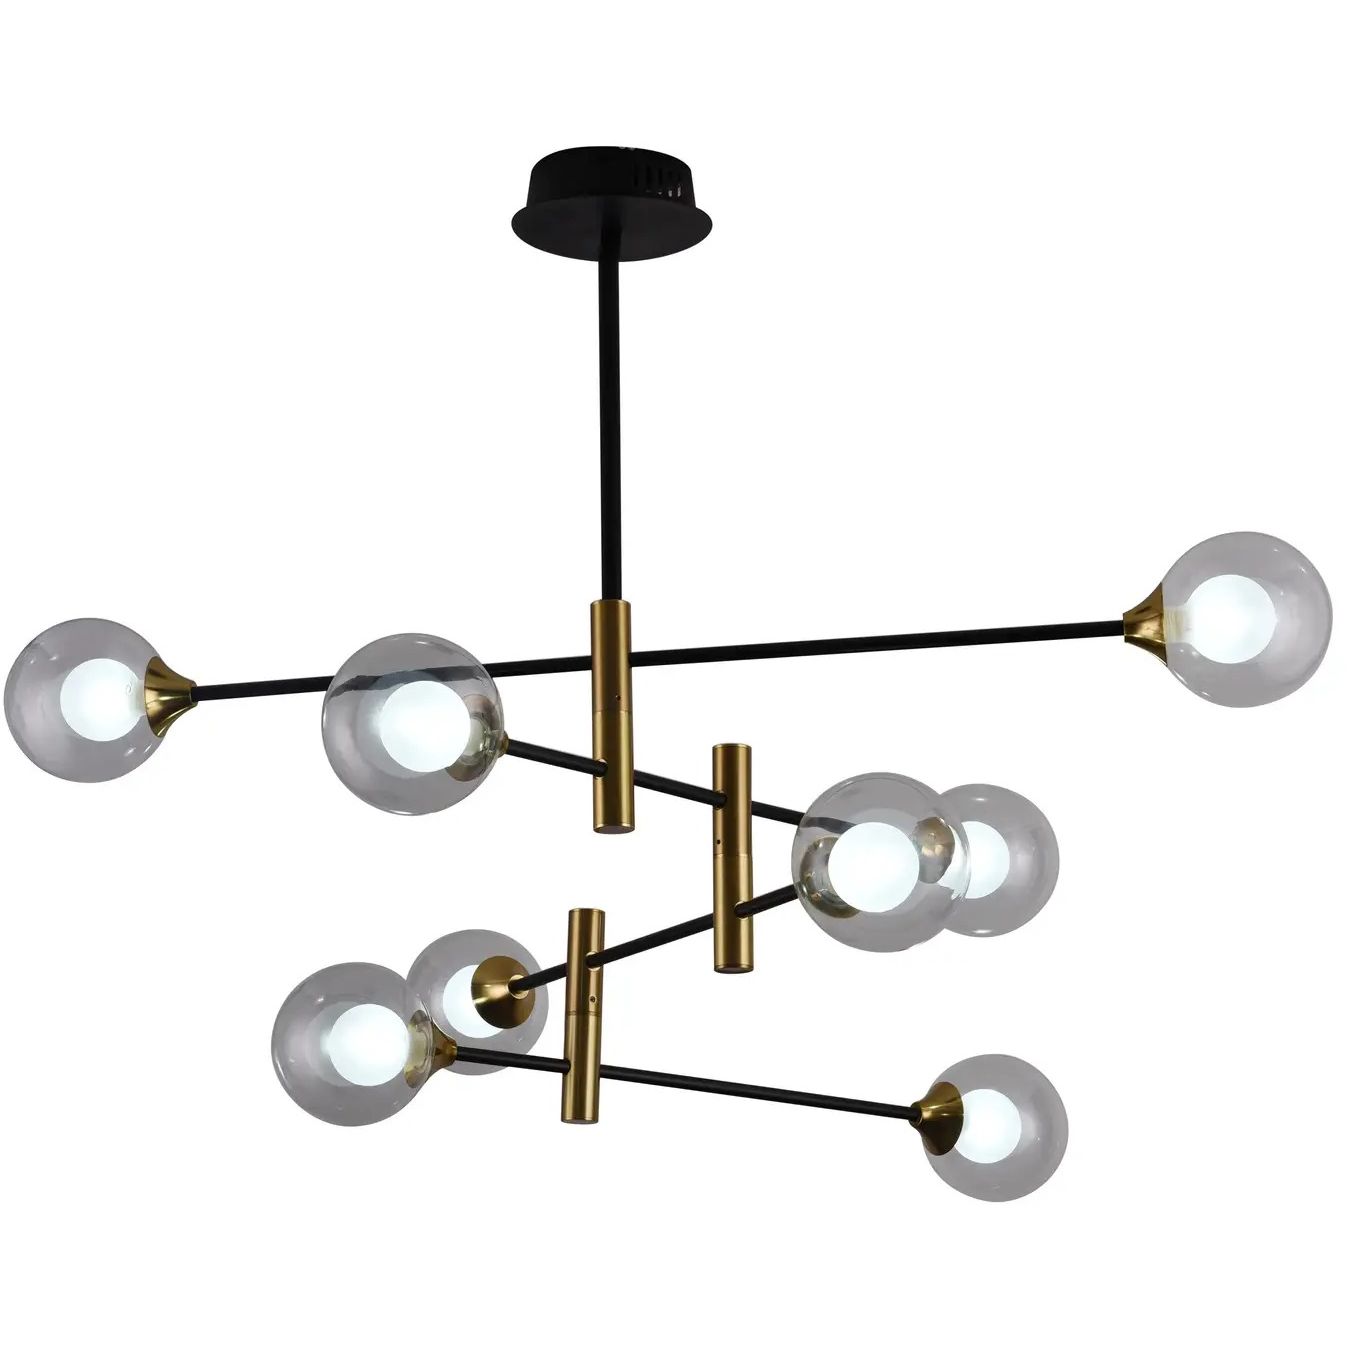 Светильник потолочный Miorro LED Prato G9 с пультом ДУ 940х860 мм золото/черный (51-313-007) - фото 3